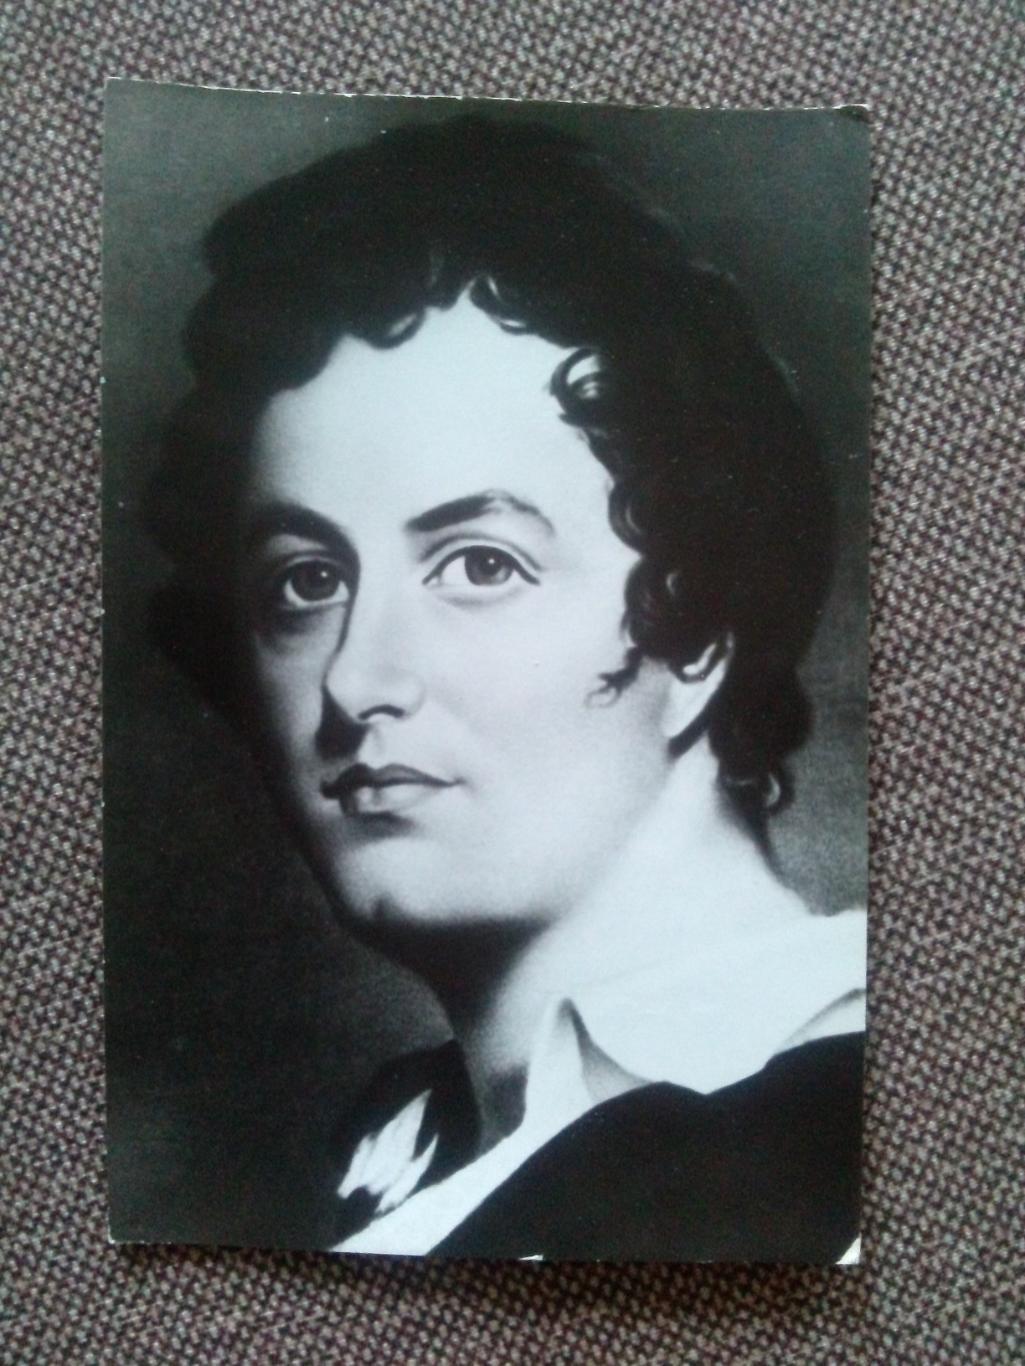 Знаменитые люди : Писатель Джон Г. Байрон ( 1788 - 1824 гг. ) 1979 г. Портрет